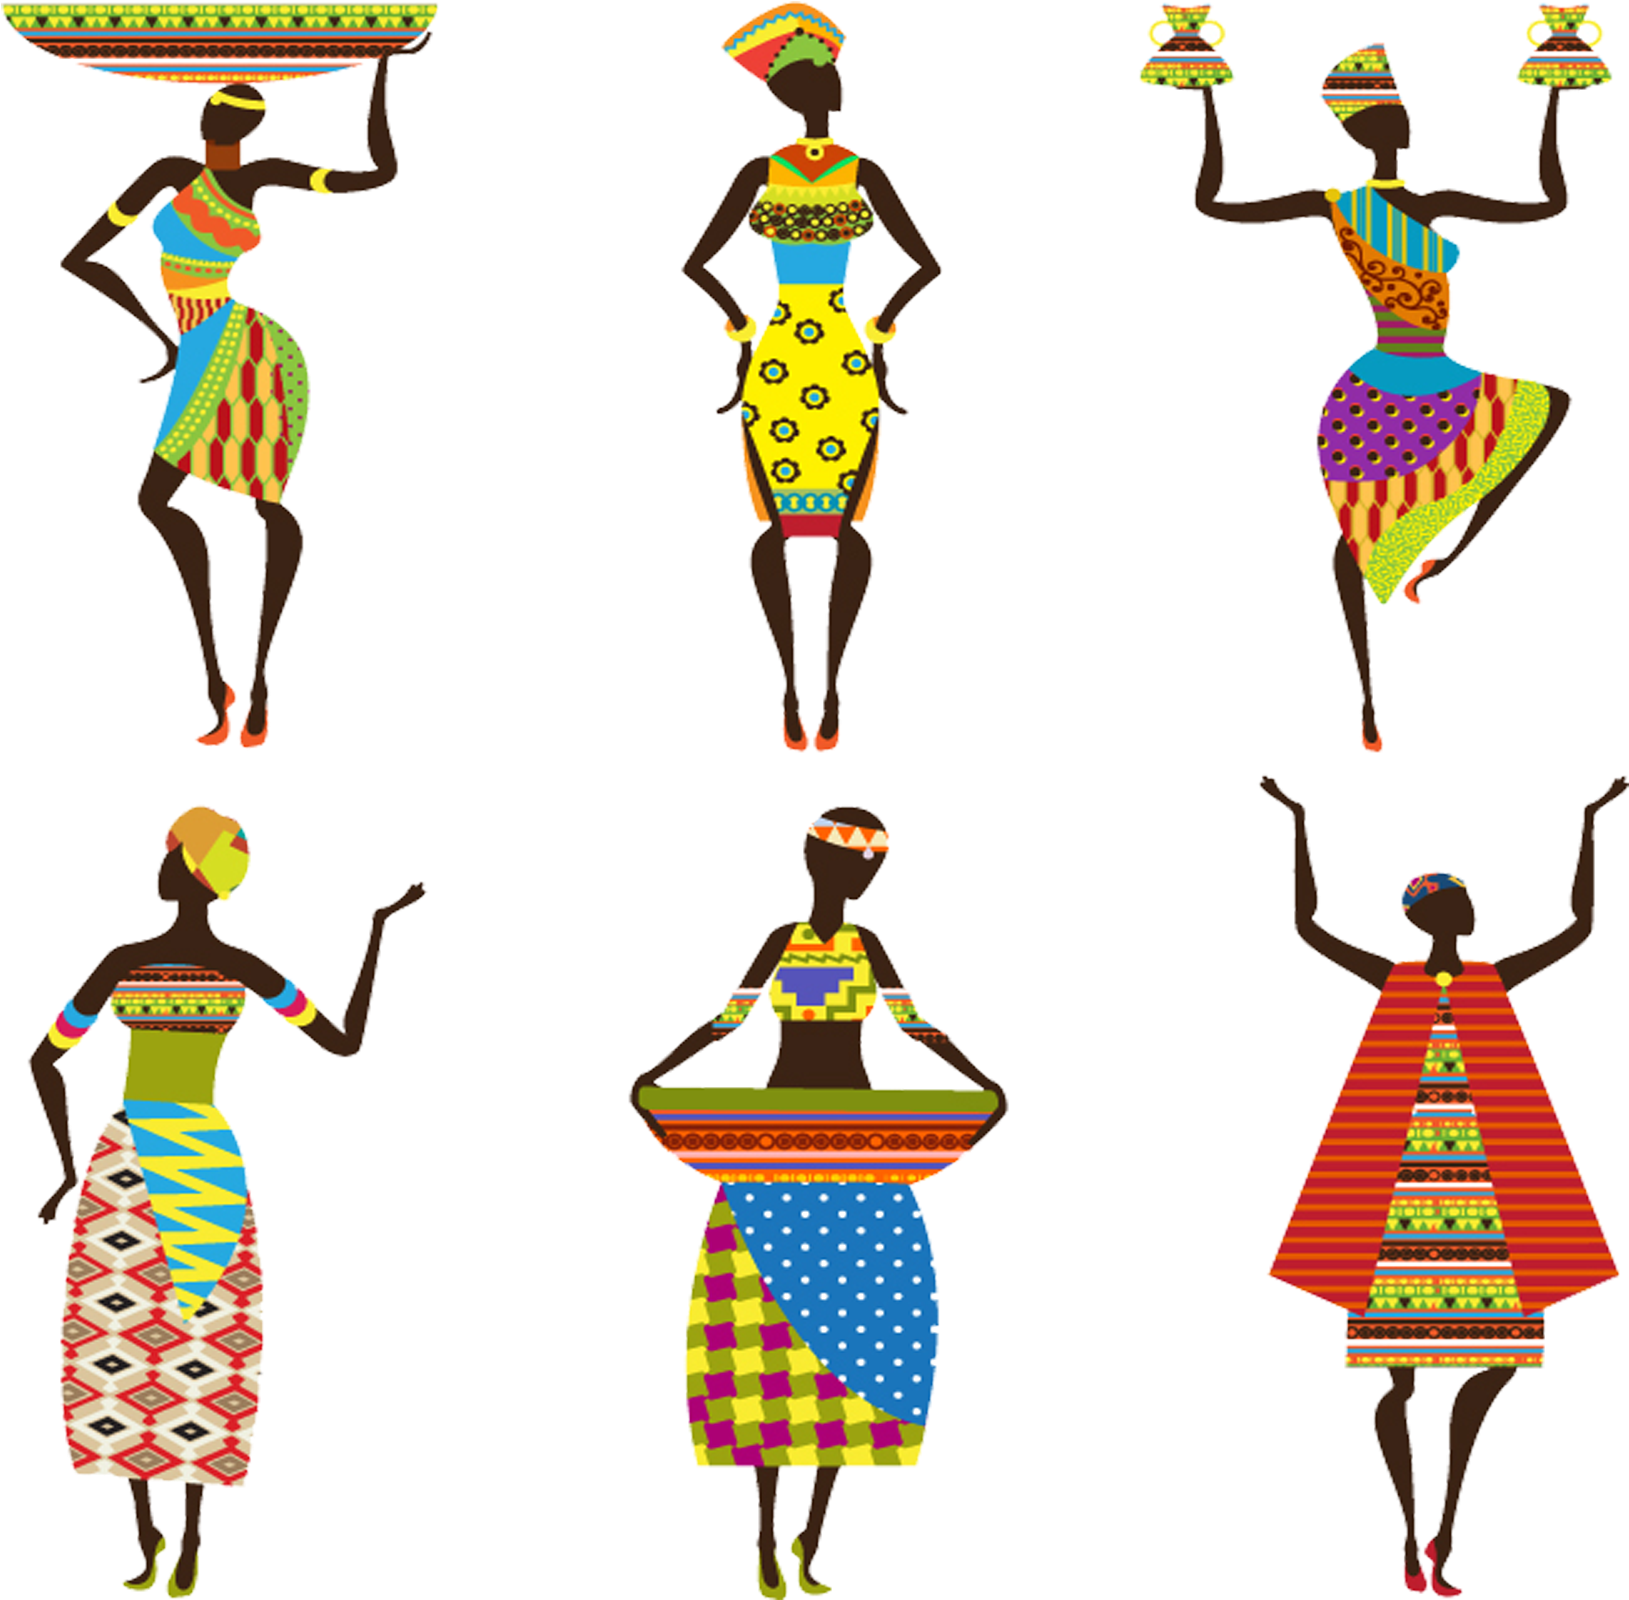 African Art Illustration - African Art Illustration (2362x2362)